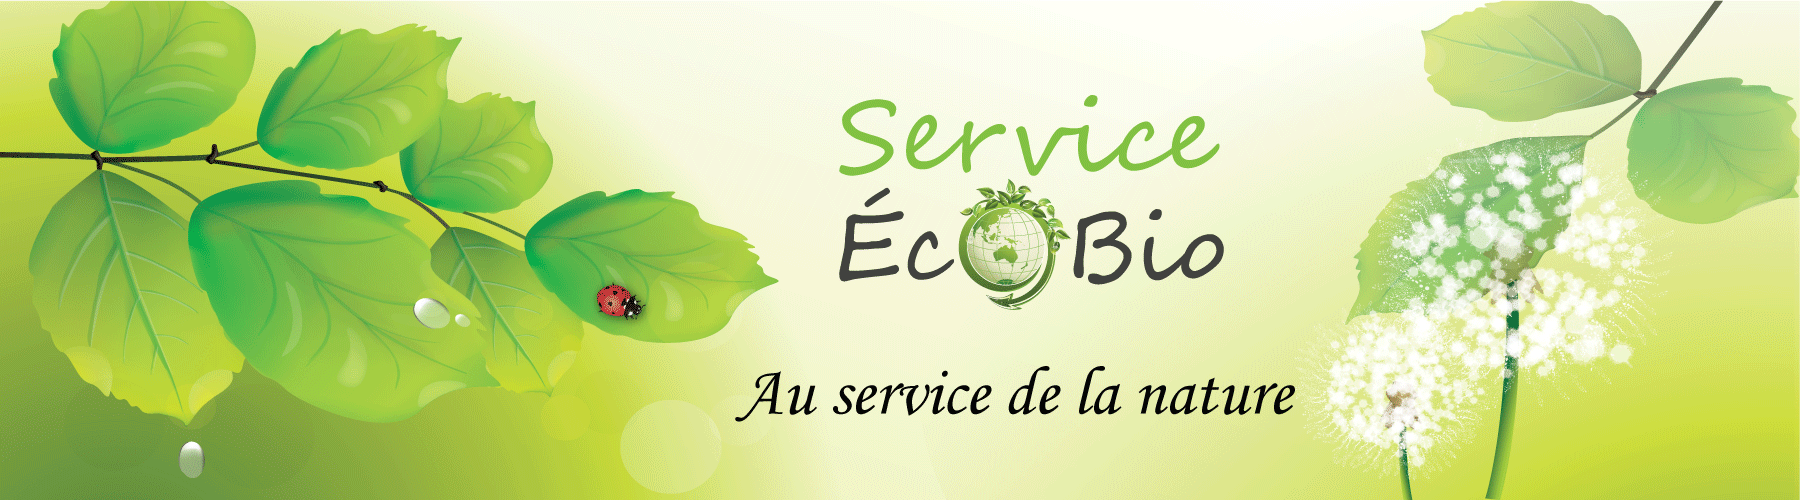 LB Service Ecobio à Neuvic Dordogne